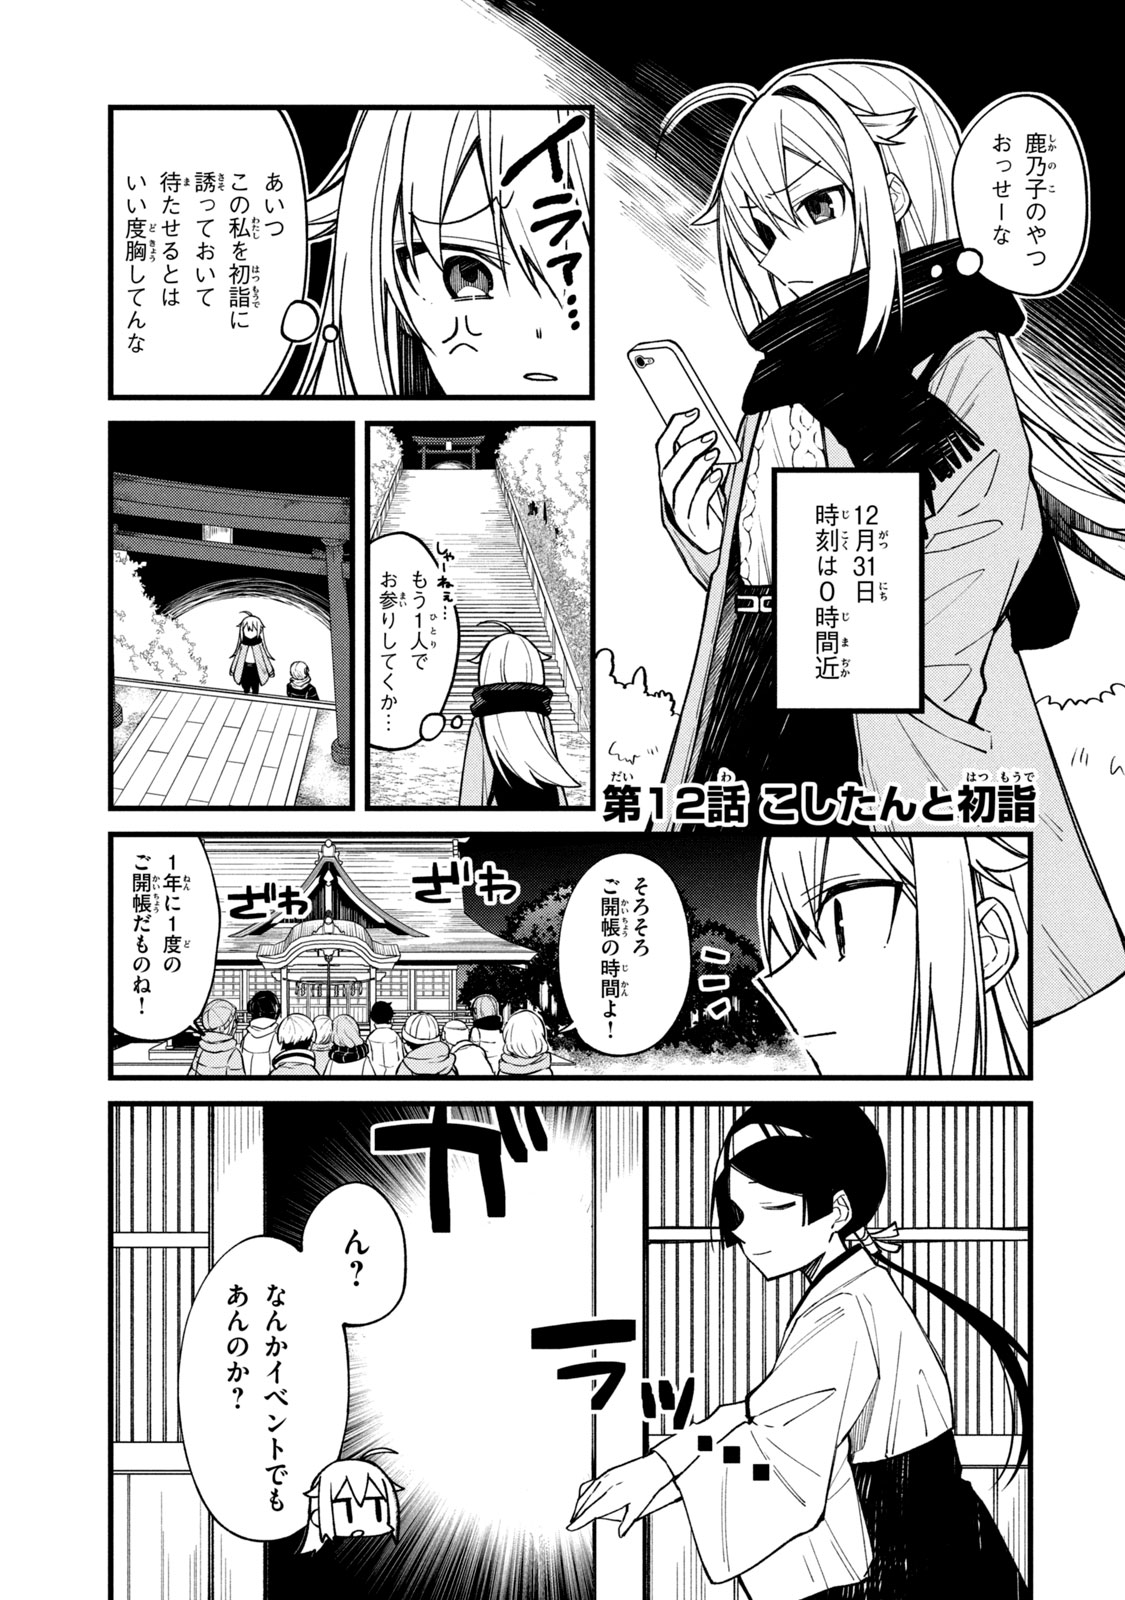 Shikanoko Nokonoko Koshitantan - Chapter 12 - Page 1